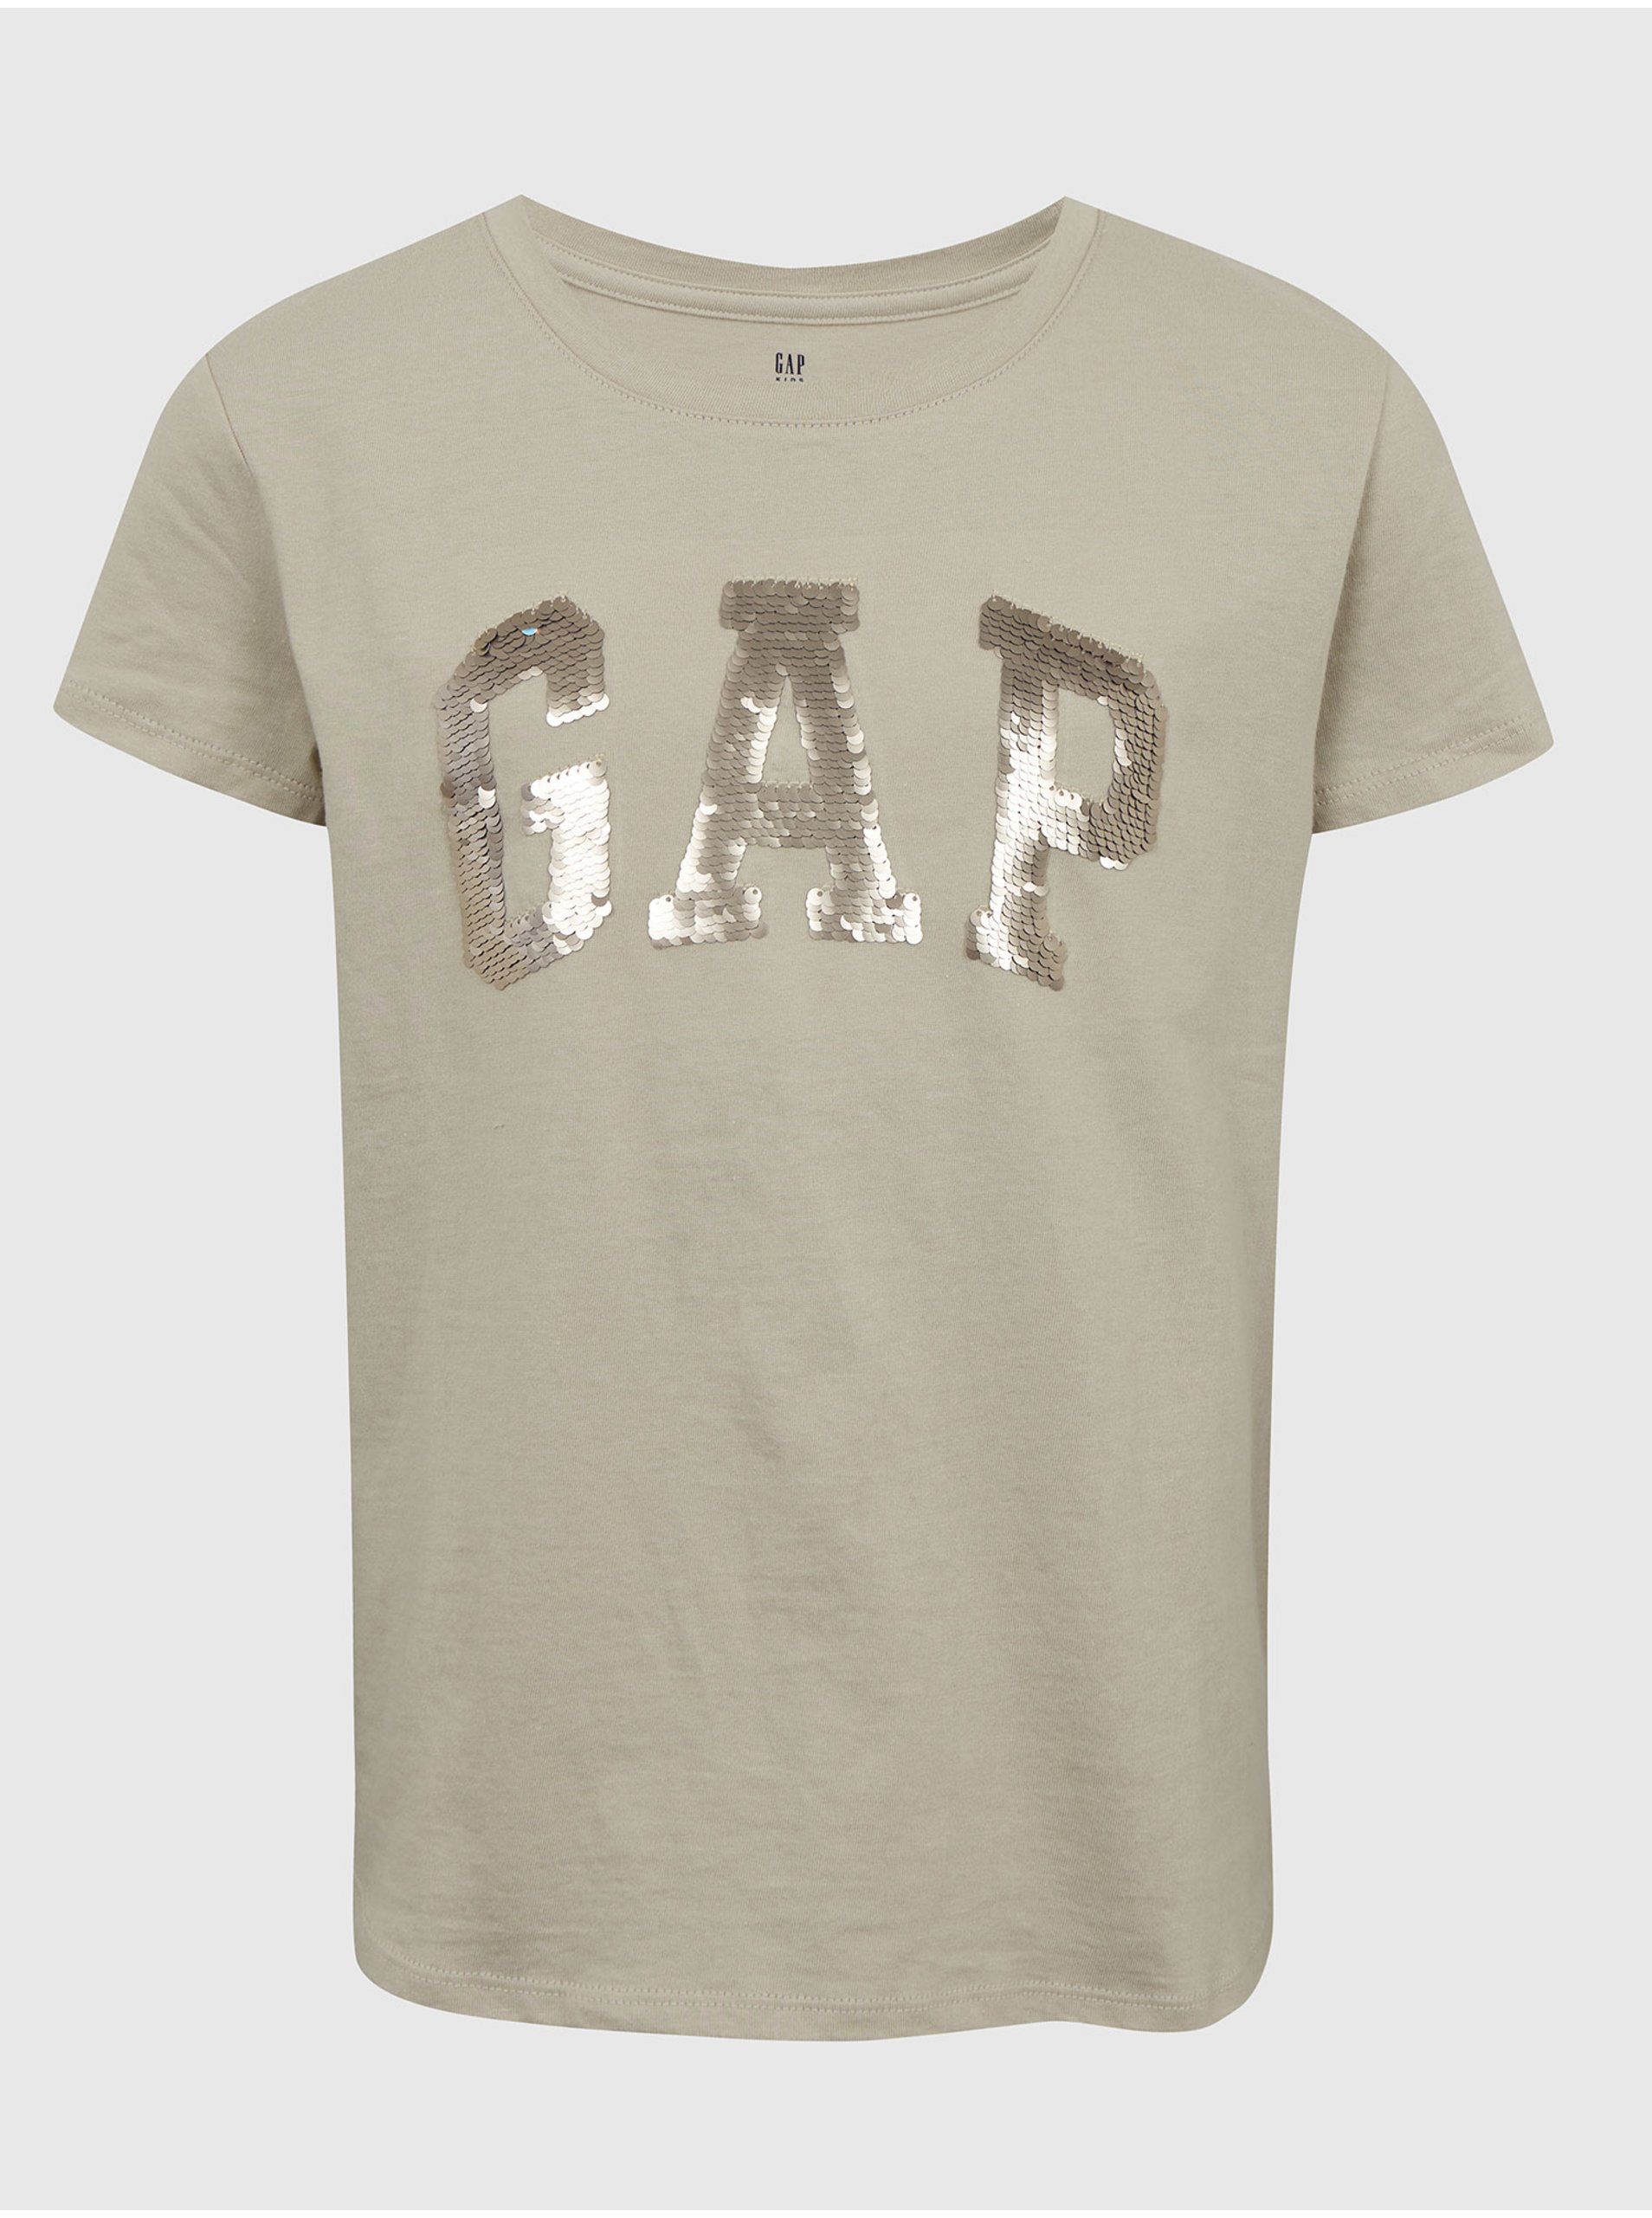 Lacno Béžové dievčenské tričko organic s flitrovým logom GAP